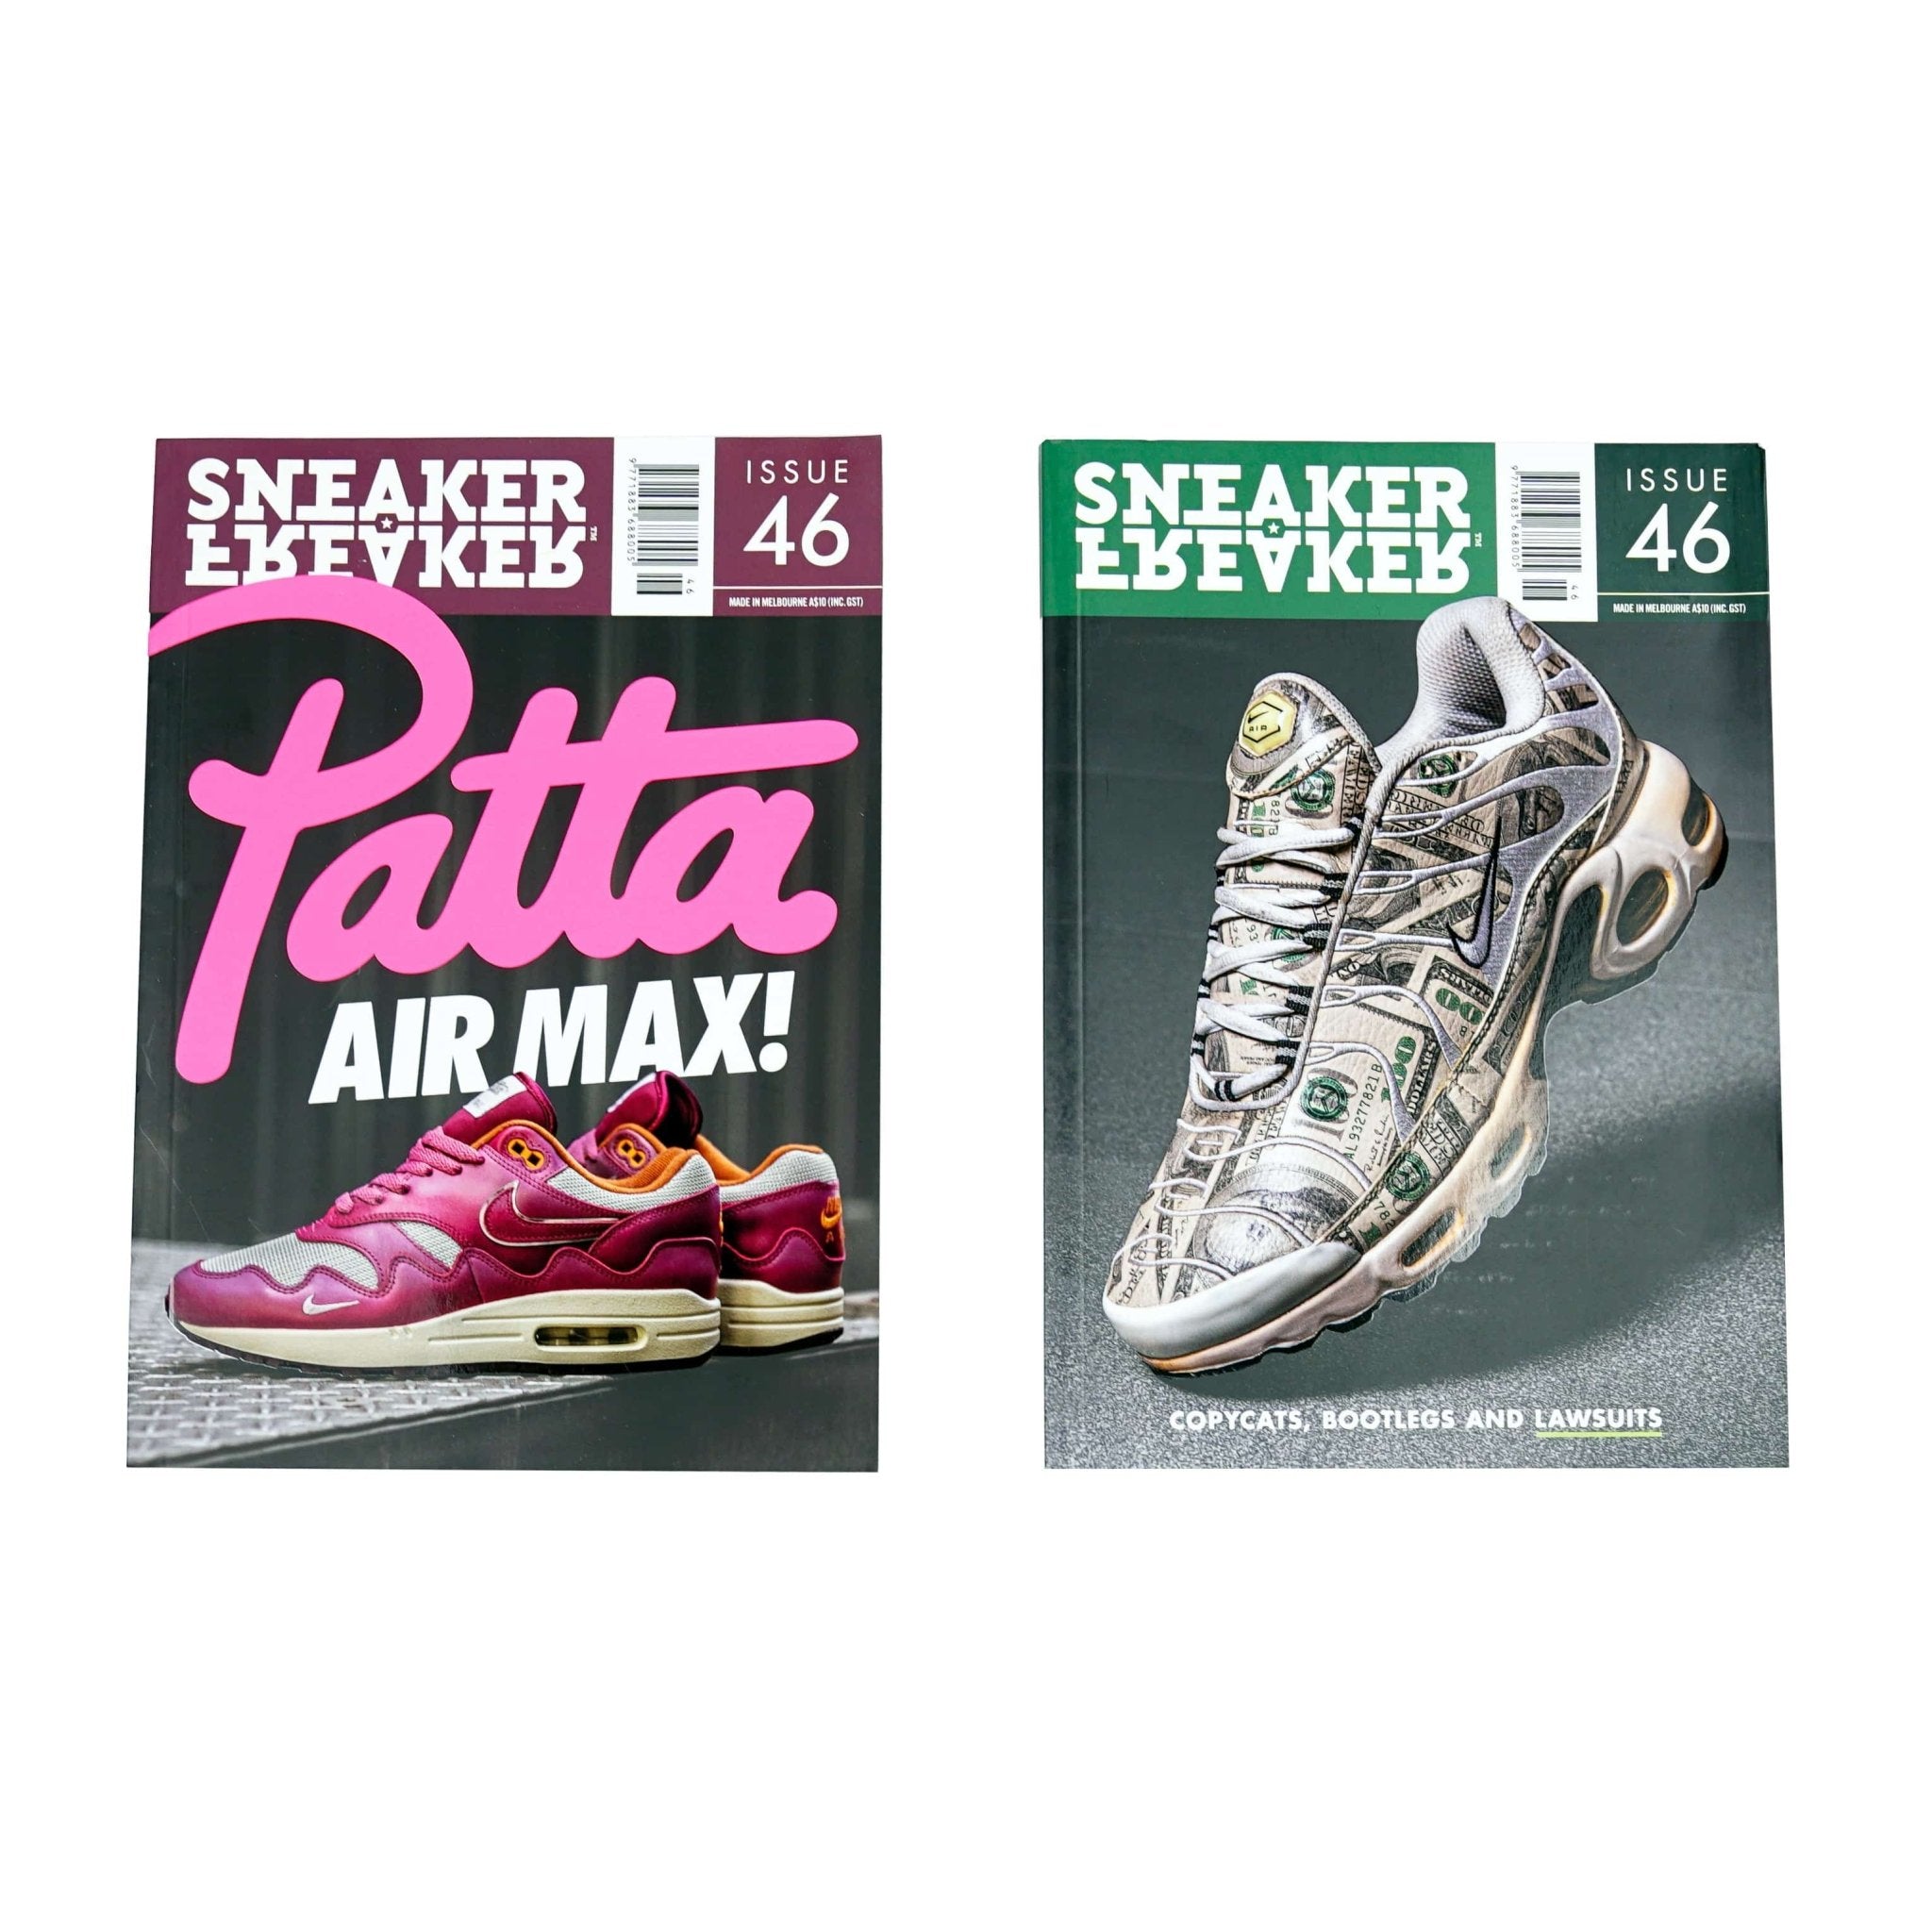 Sneaker Freaker Issue 46 in multi